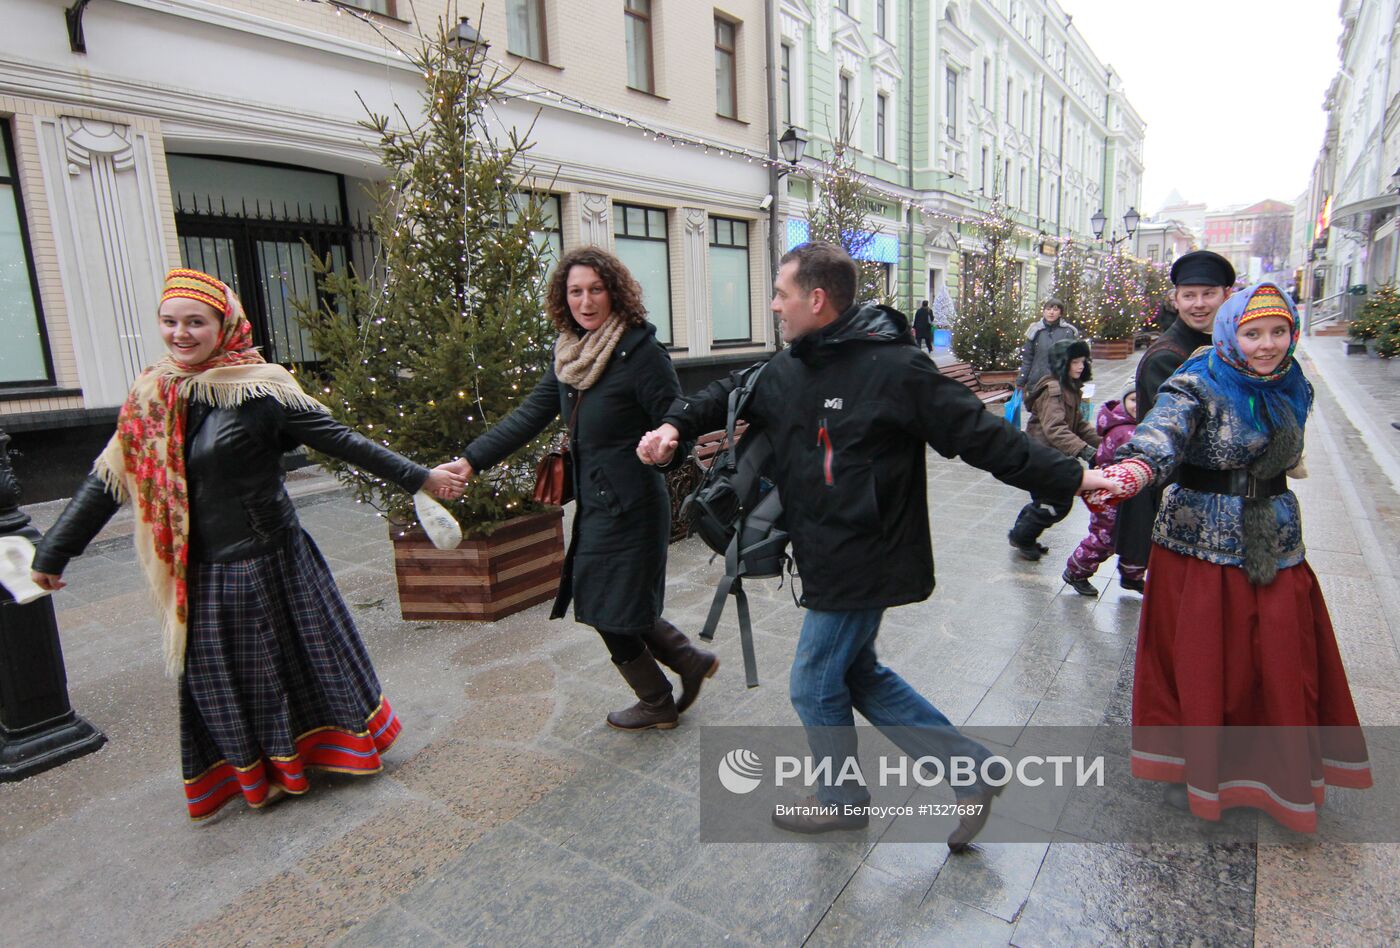 Открытие пешеходной зоны в Тверском районе Москвы